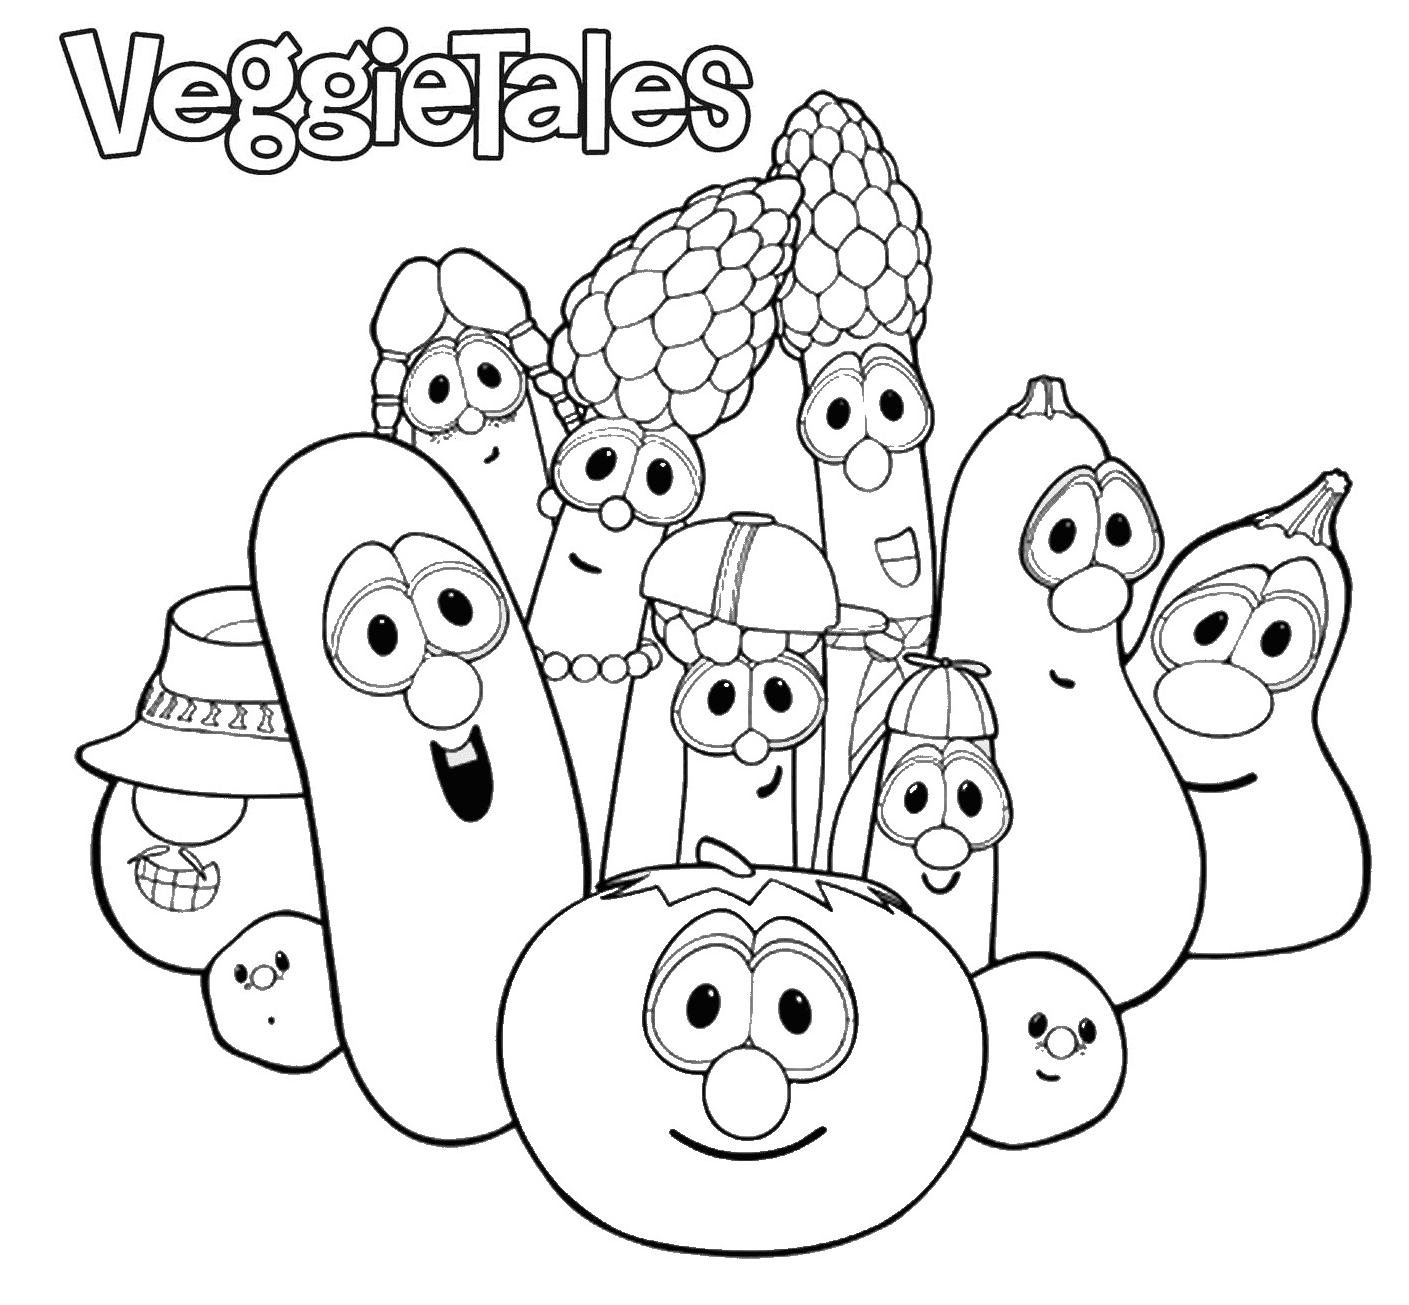 VeggieTales from VeggieTales